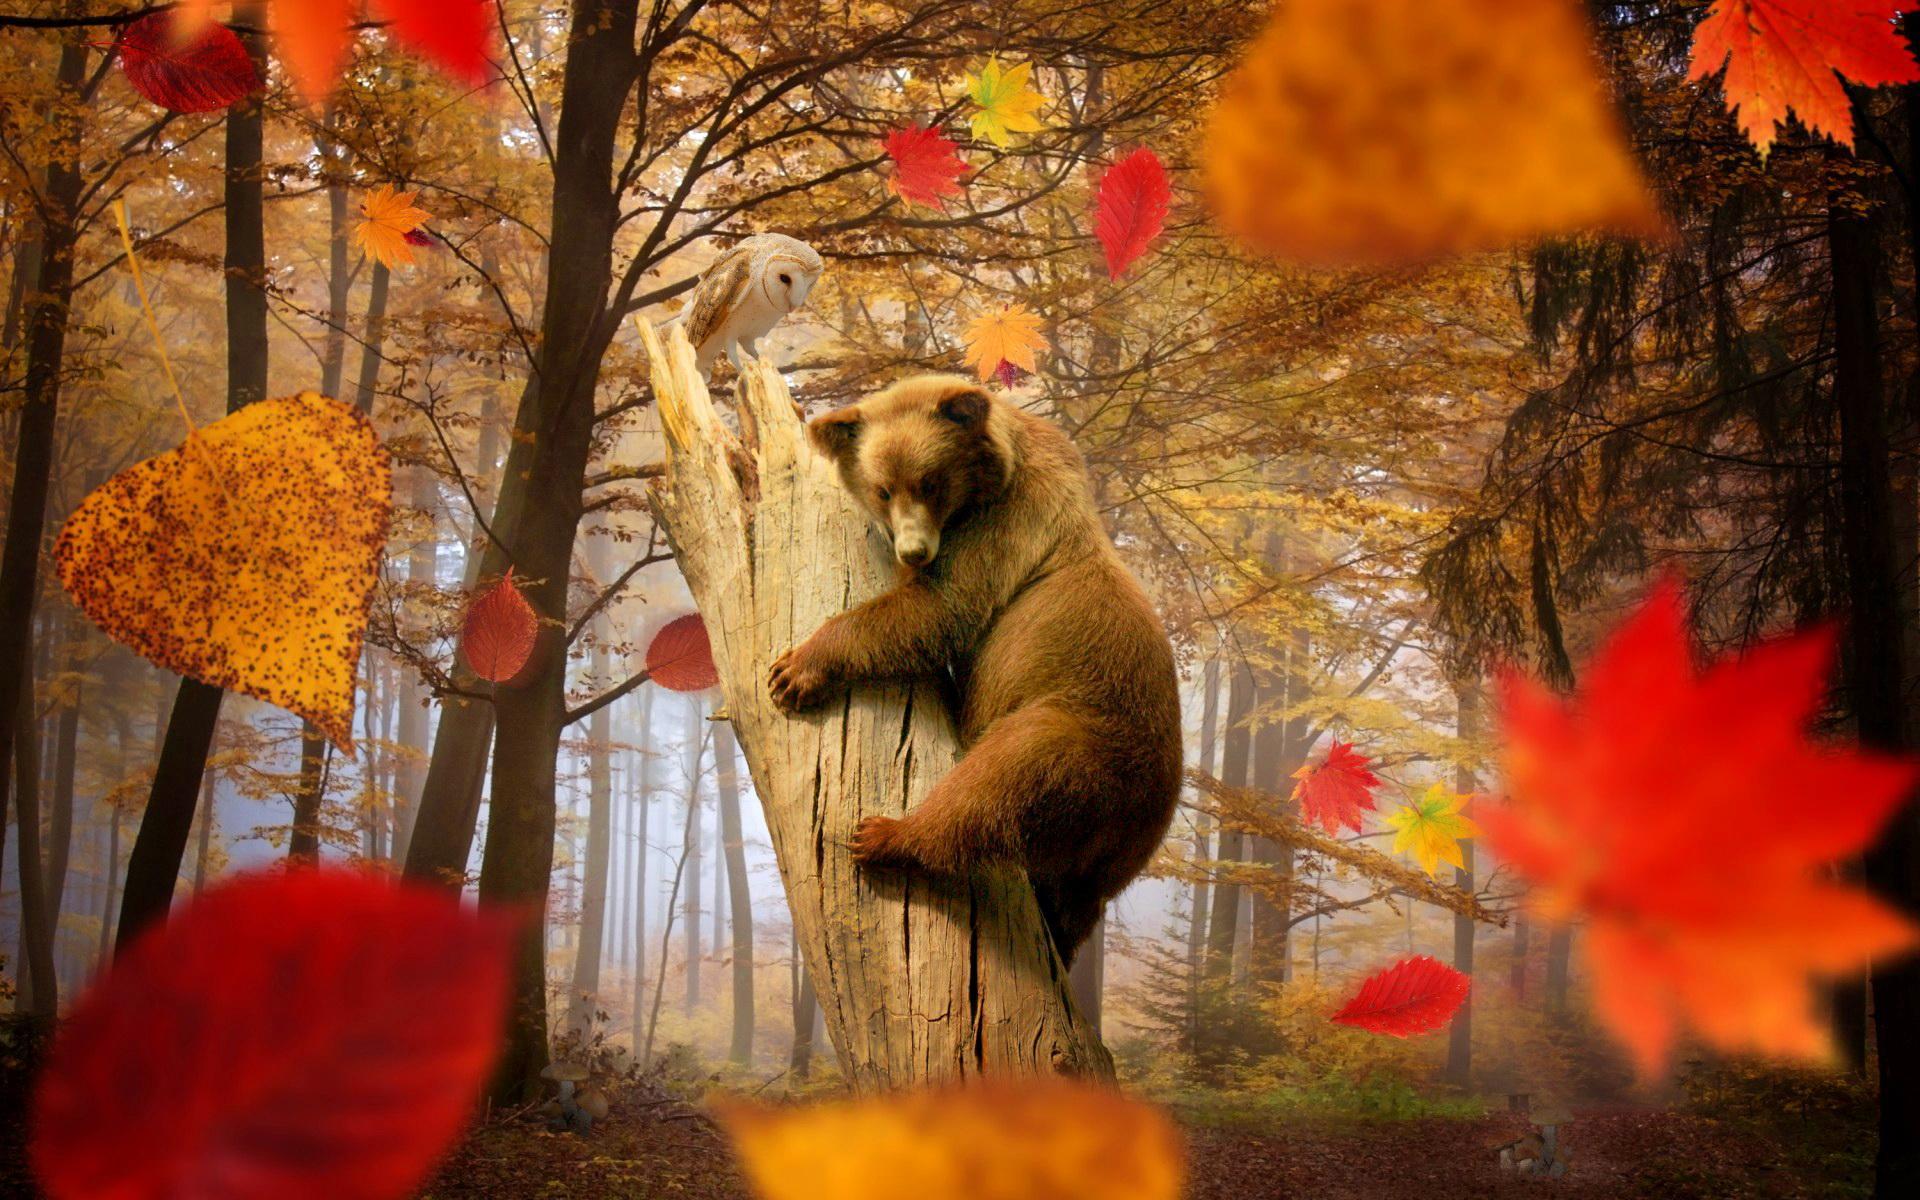 Autumn joy HD desktop wallpaper, Widescreen, High Definition